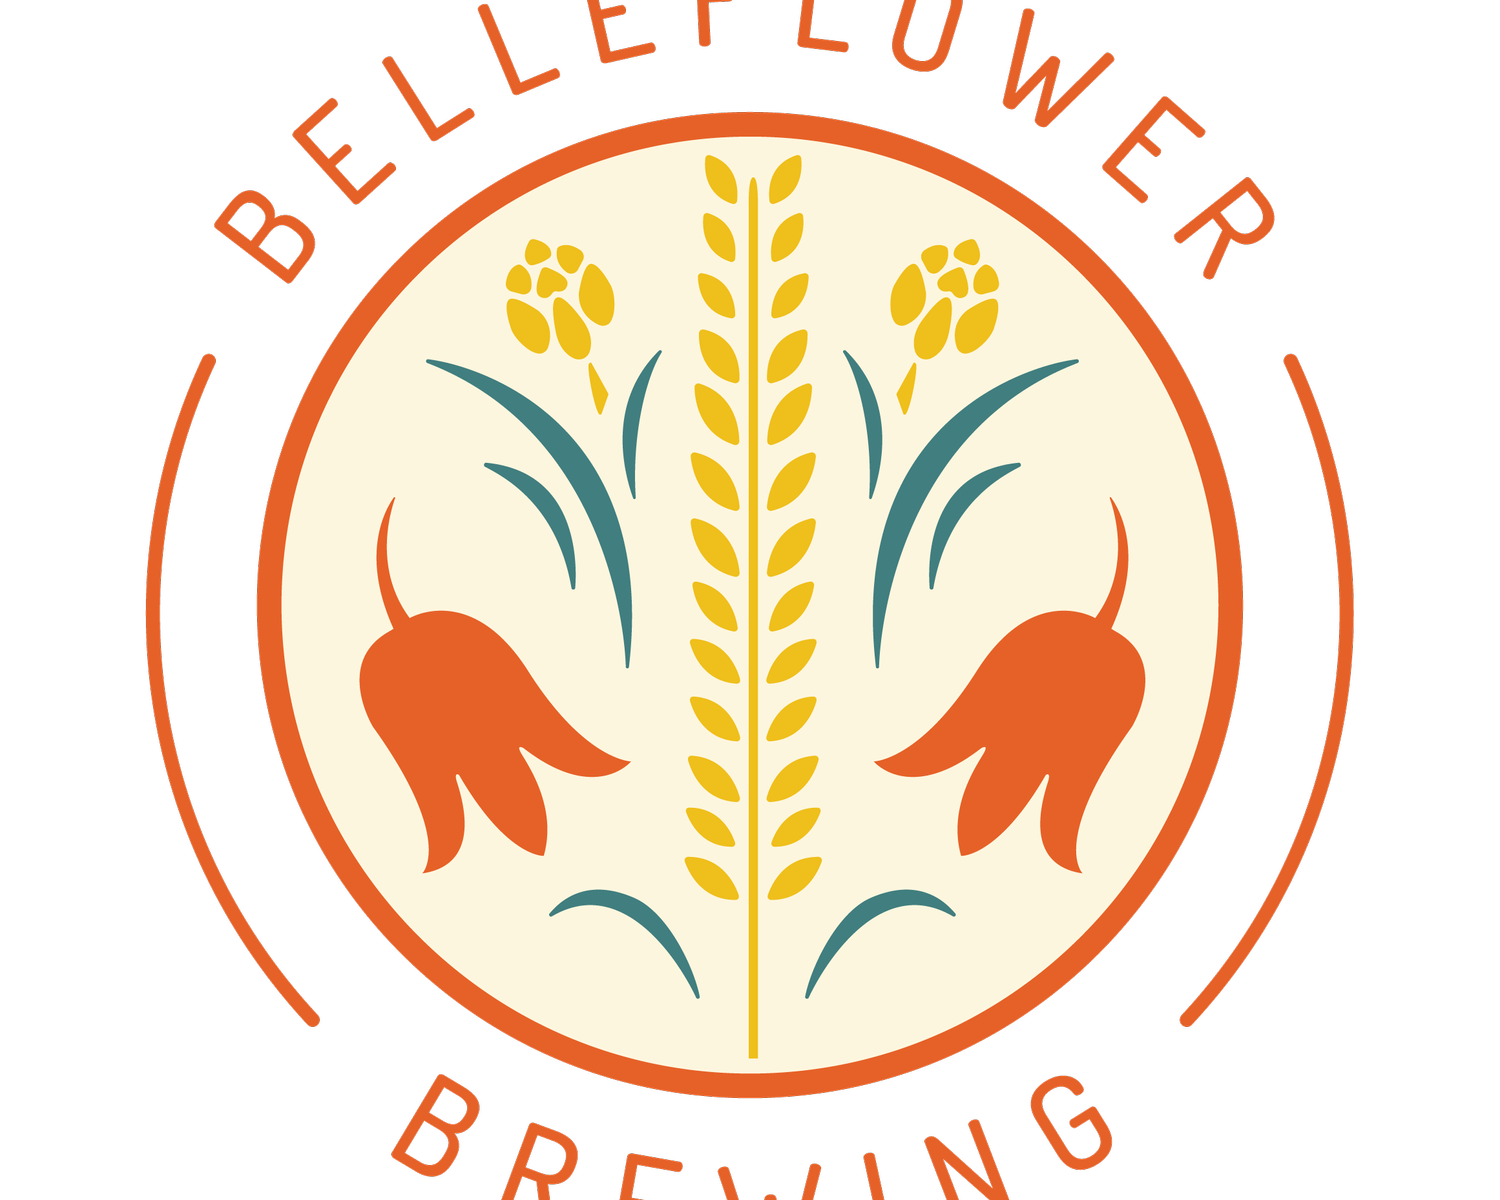 Belleflower Brewing Company logo